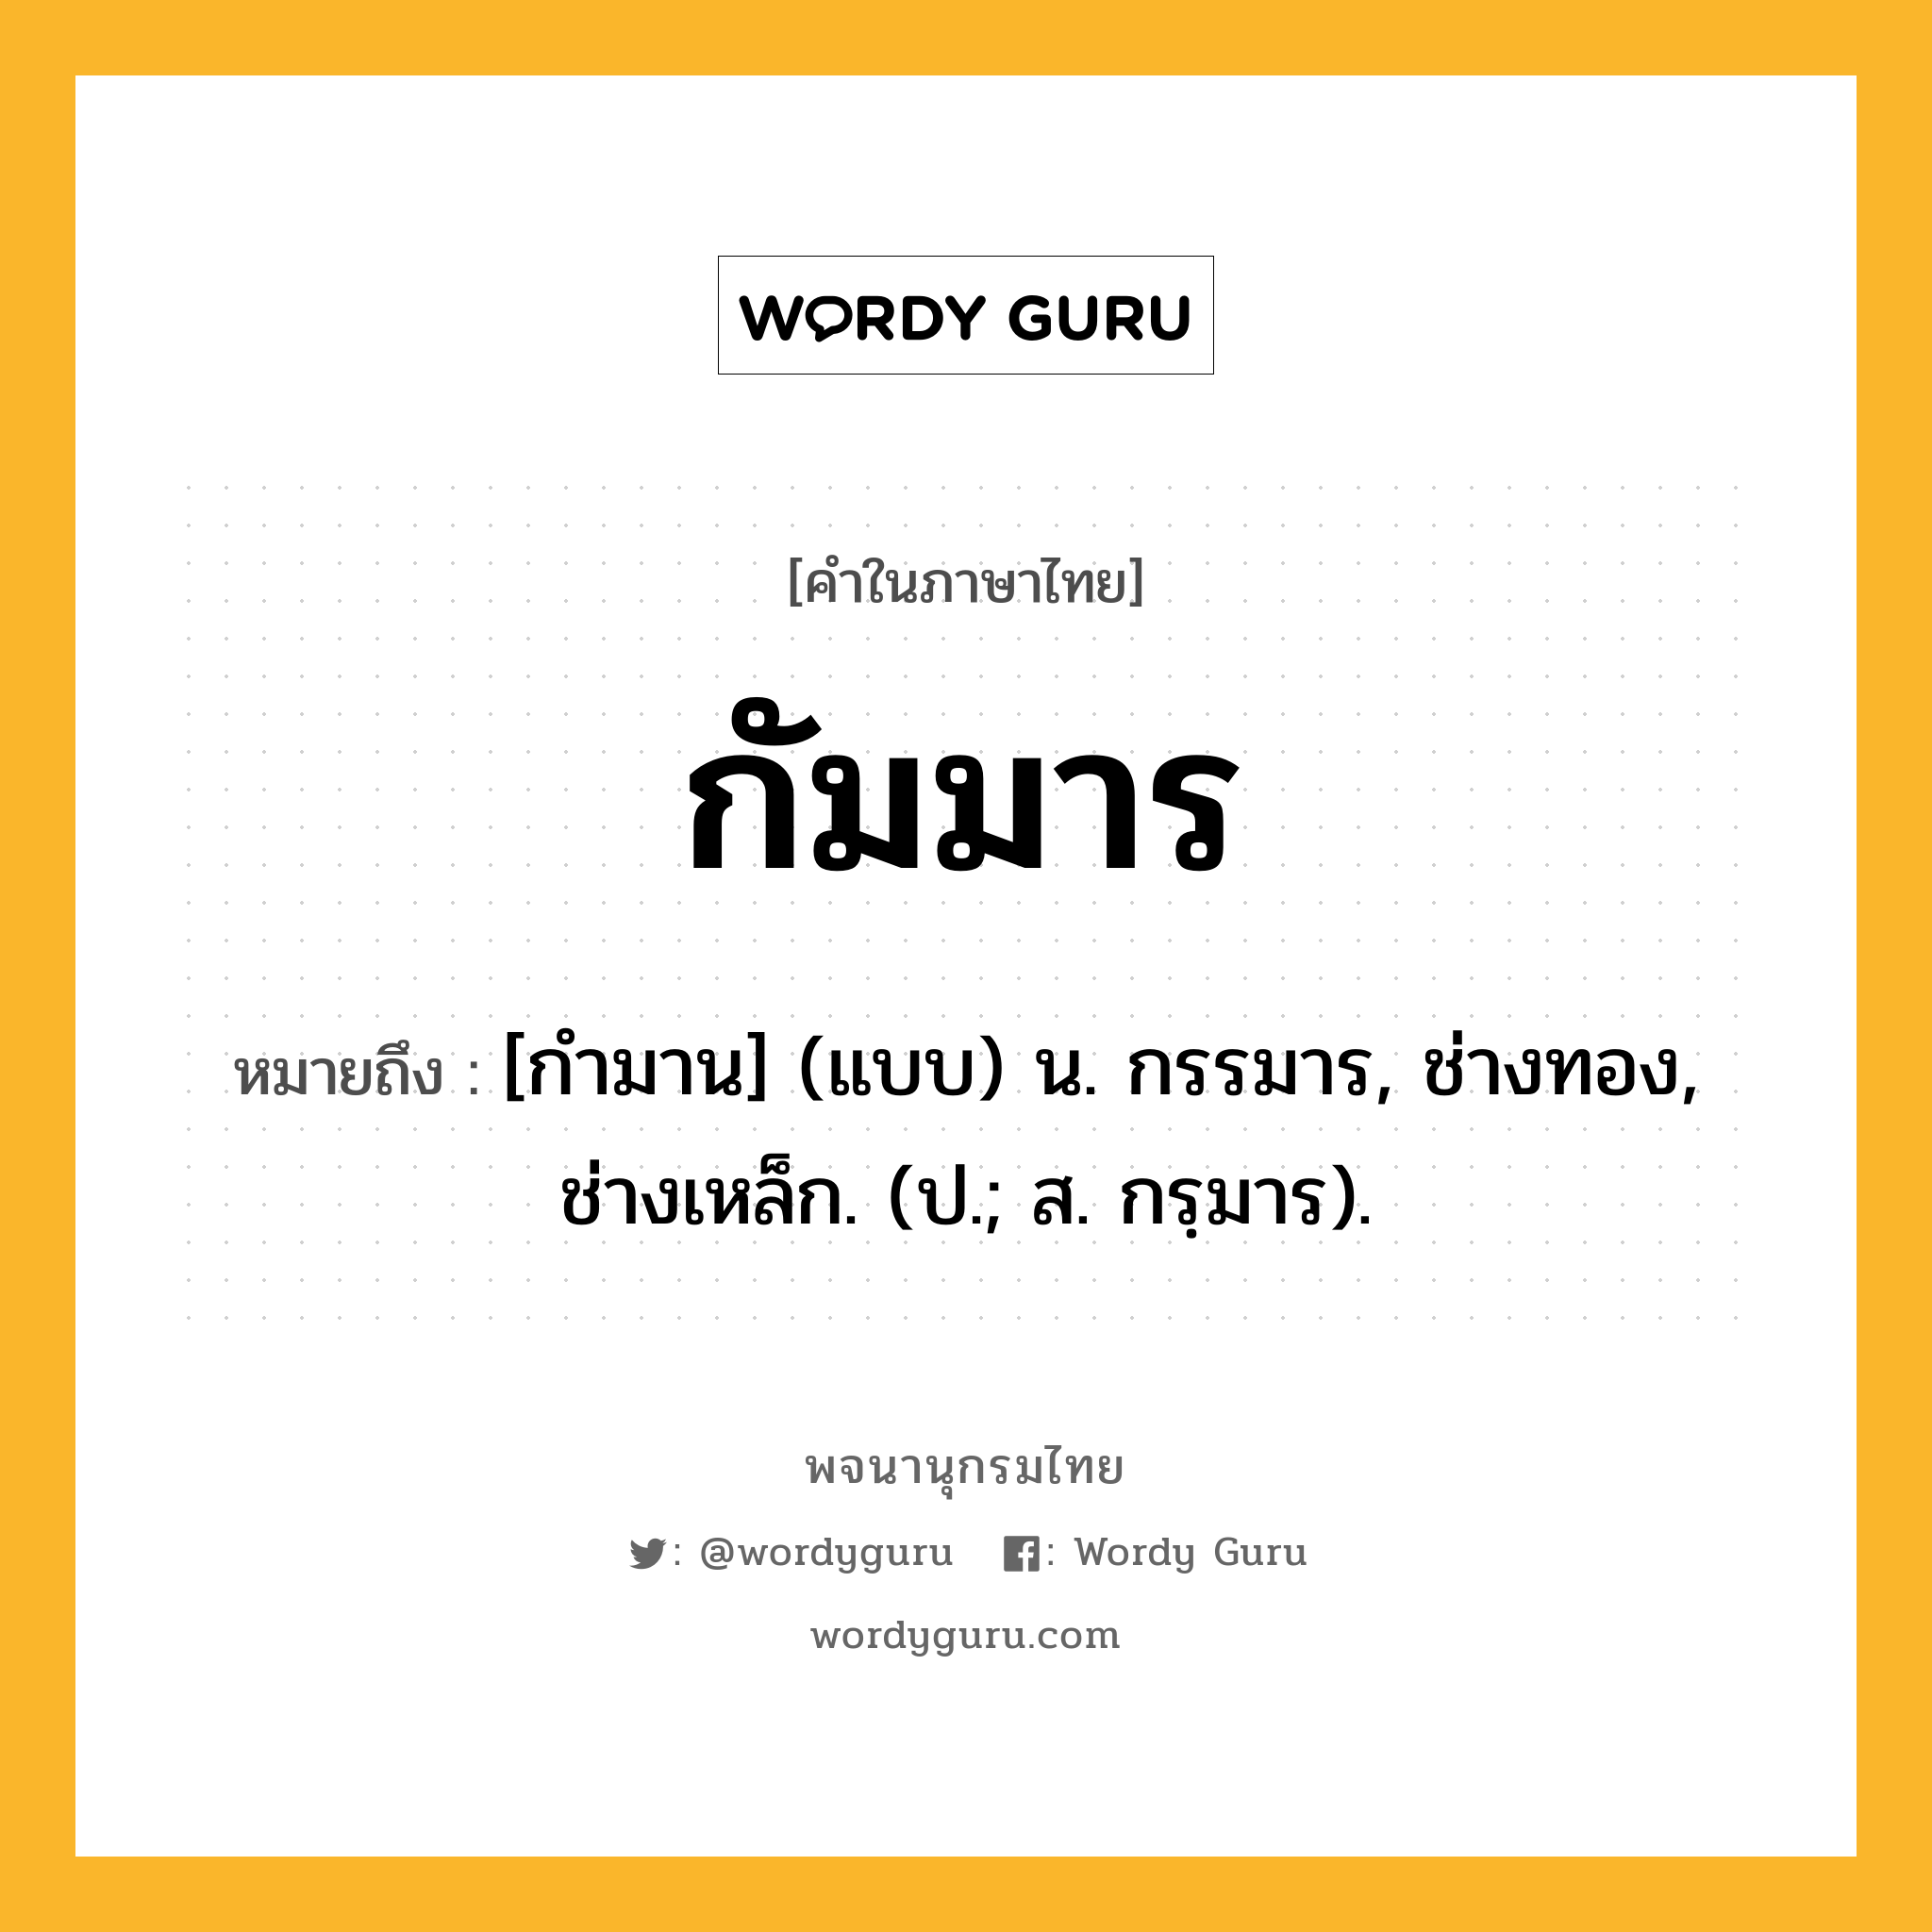 กัมมาร หมายถึงอะไร?, คำในภาษาไทย กัมมาร หมายถึง [กํามาน] (แบบ) น. กรรมาร, ช่างทอง, ช่างเหล็ก. (ป.; ส. กรฺมาร).